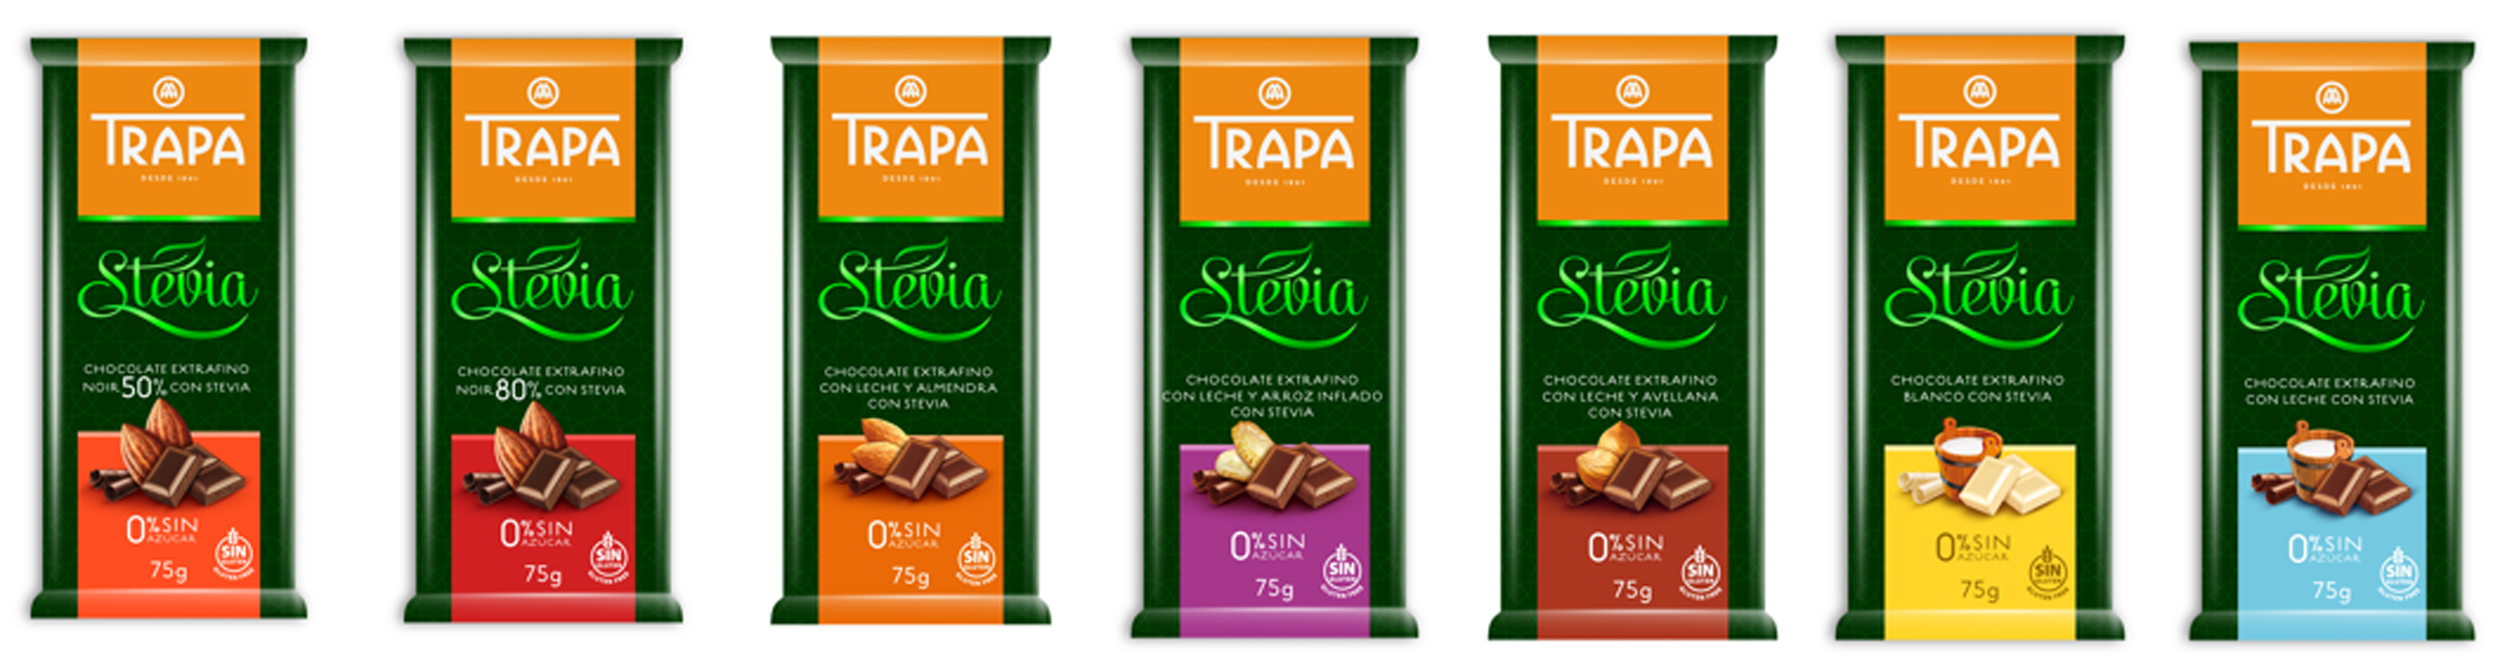 Stevia Schokolade aus Spanien - frisch bei uns eingetroffen!